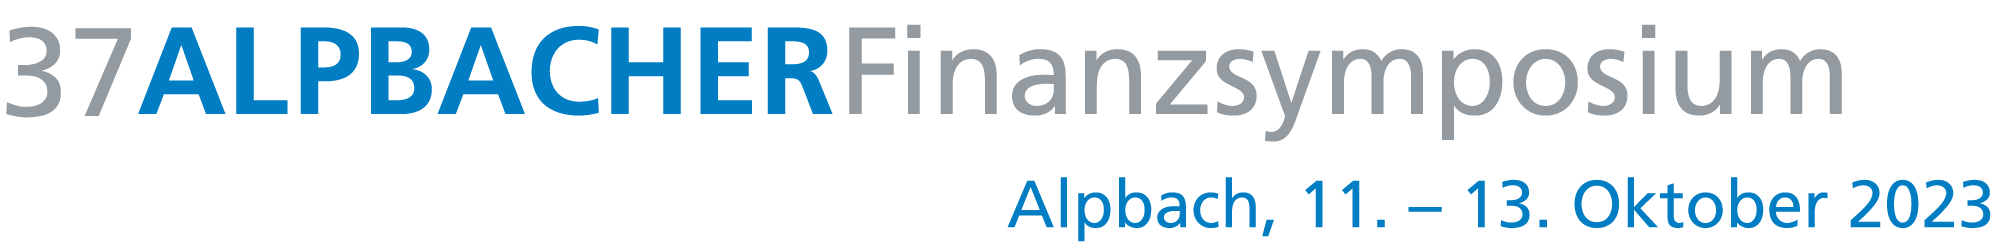 37 Alpbacher Finanzsymposium